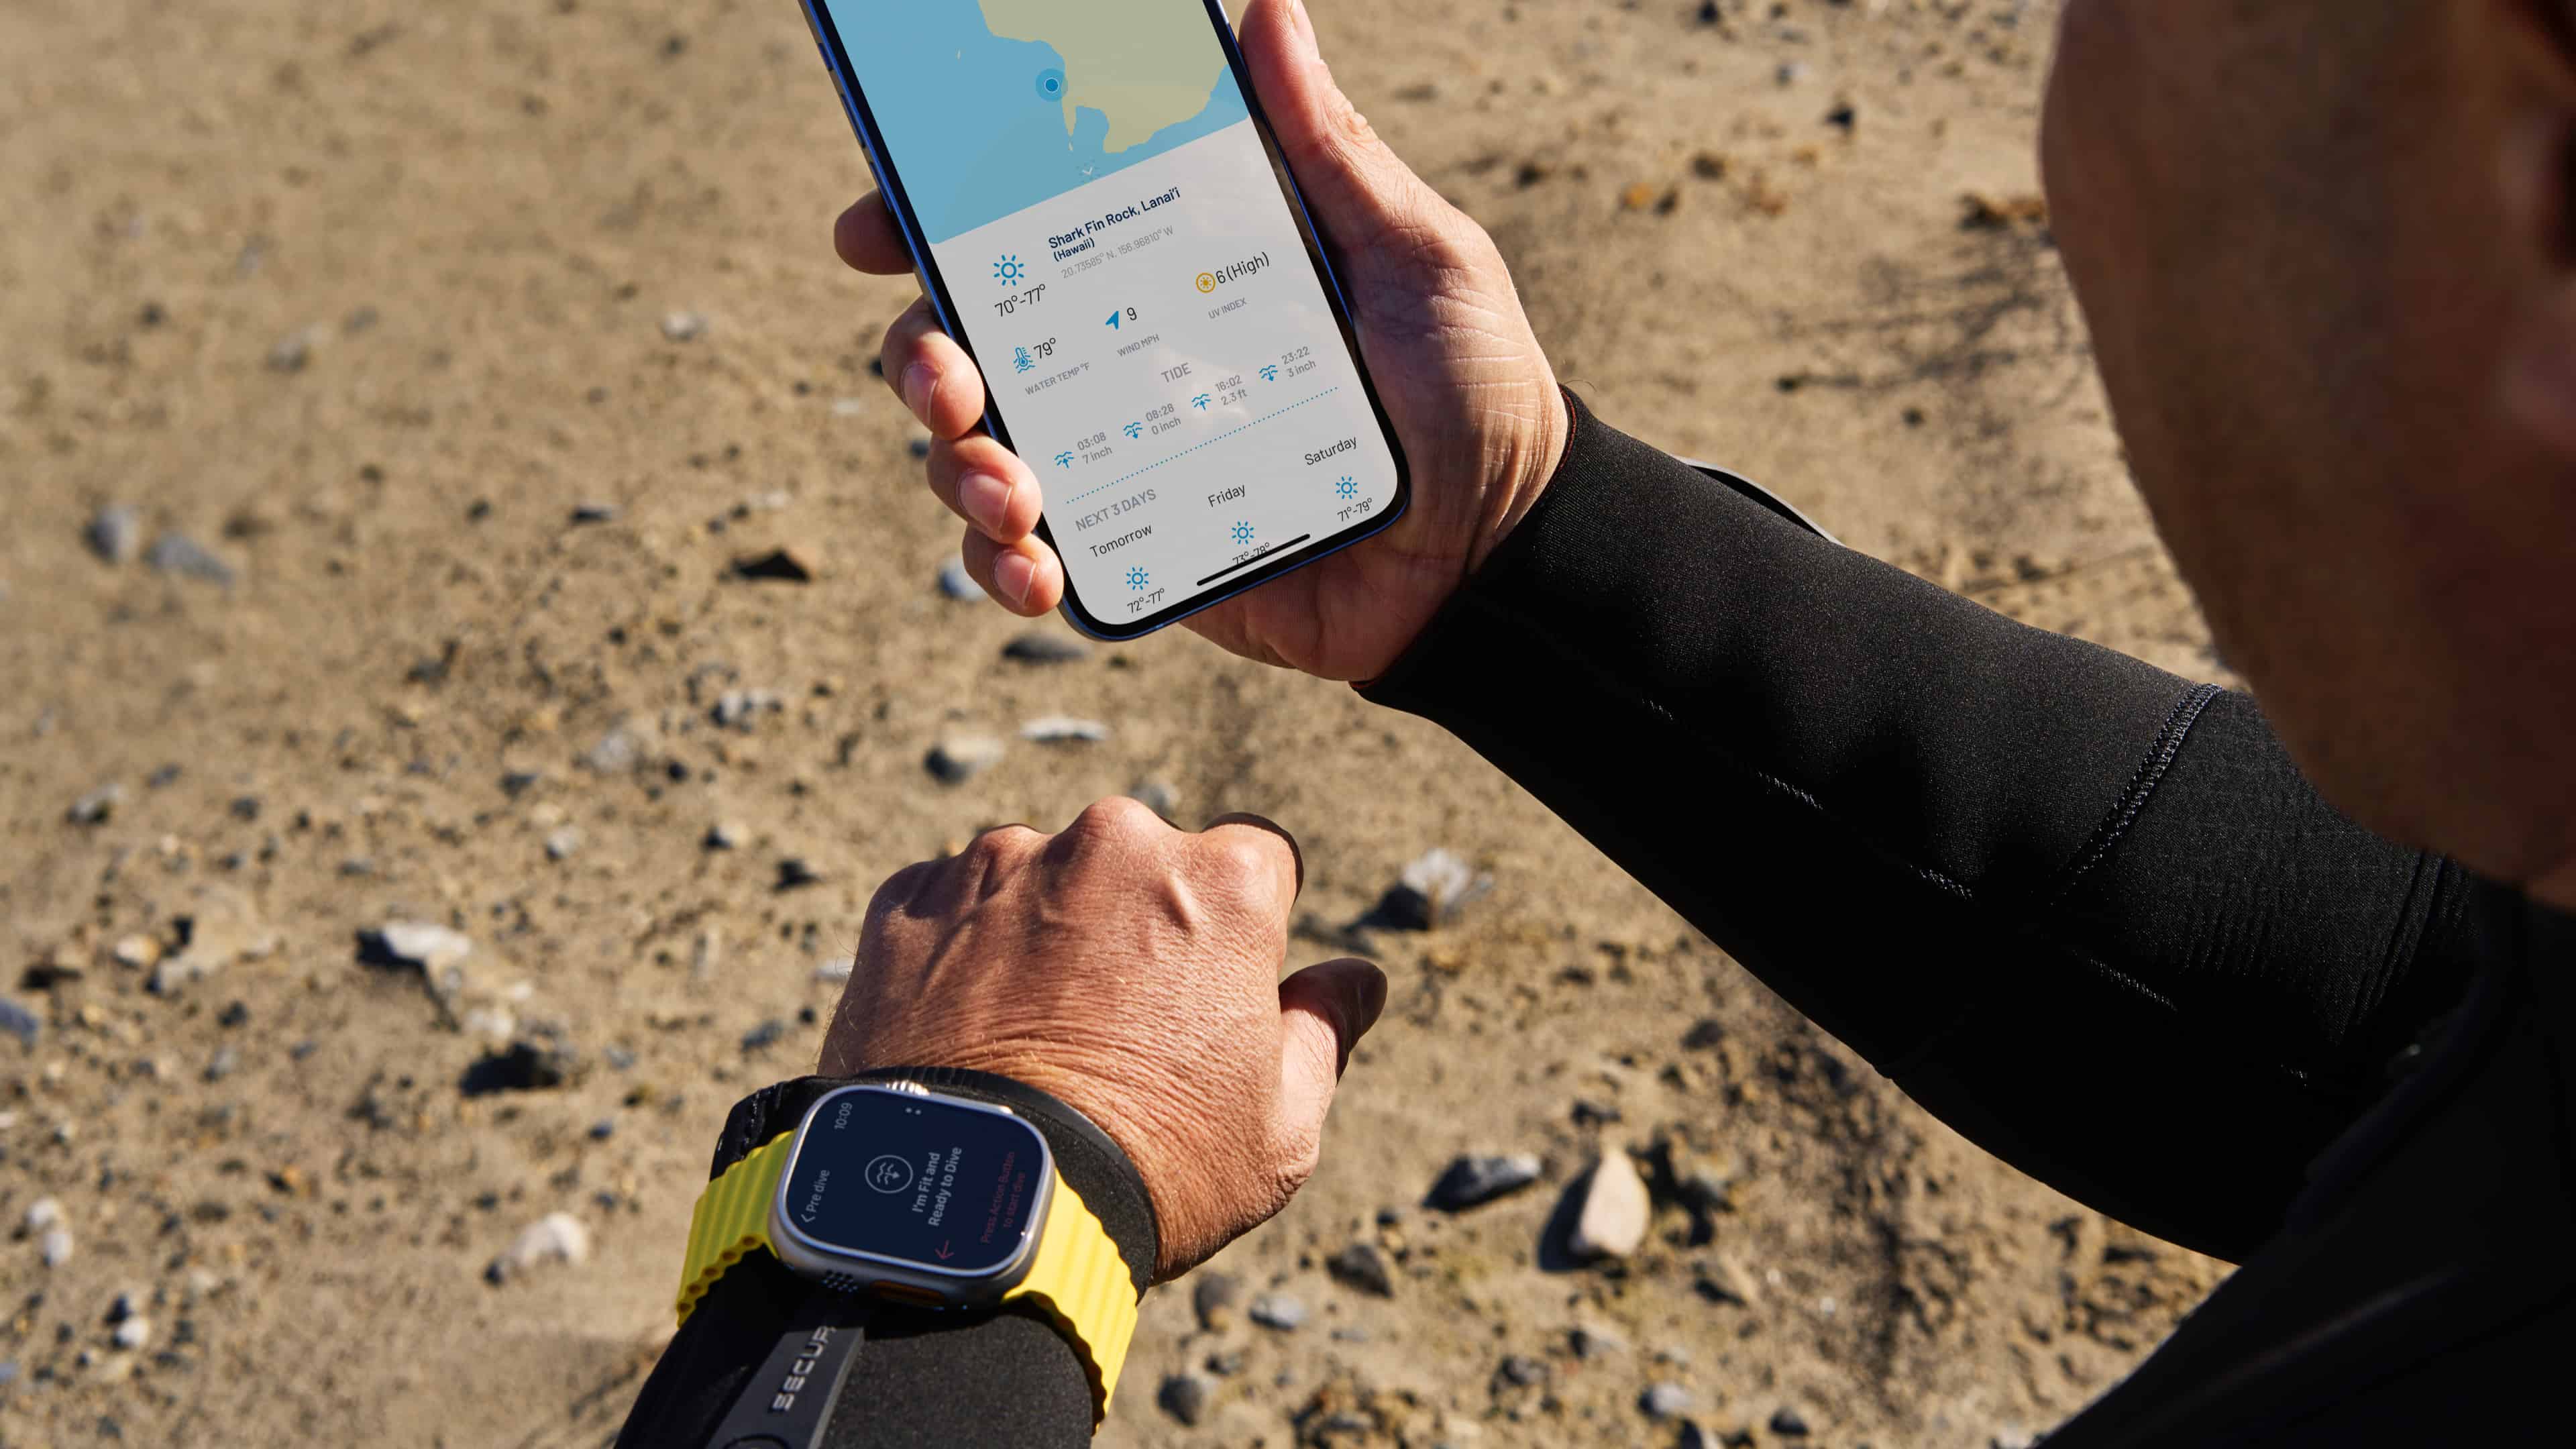 Ein Taucher am Strand, der ein iPhone in der Hand hält und eine Apple Watch Ultra trägt, führt in der Oceanic+ App eine Tauchgangsplanung durch